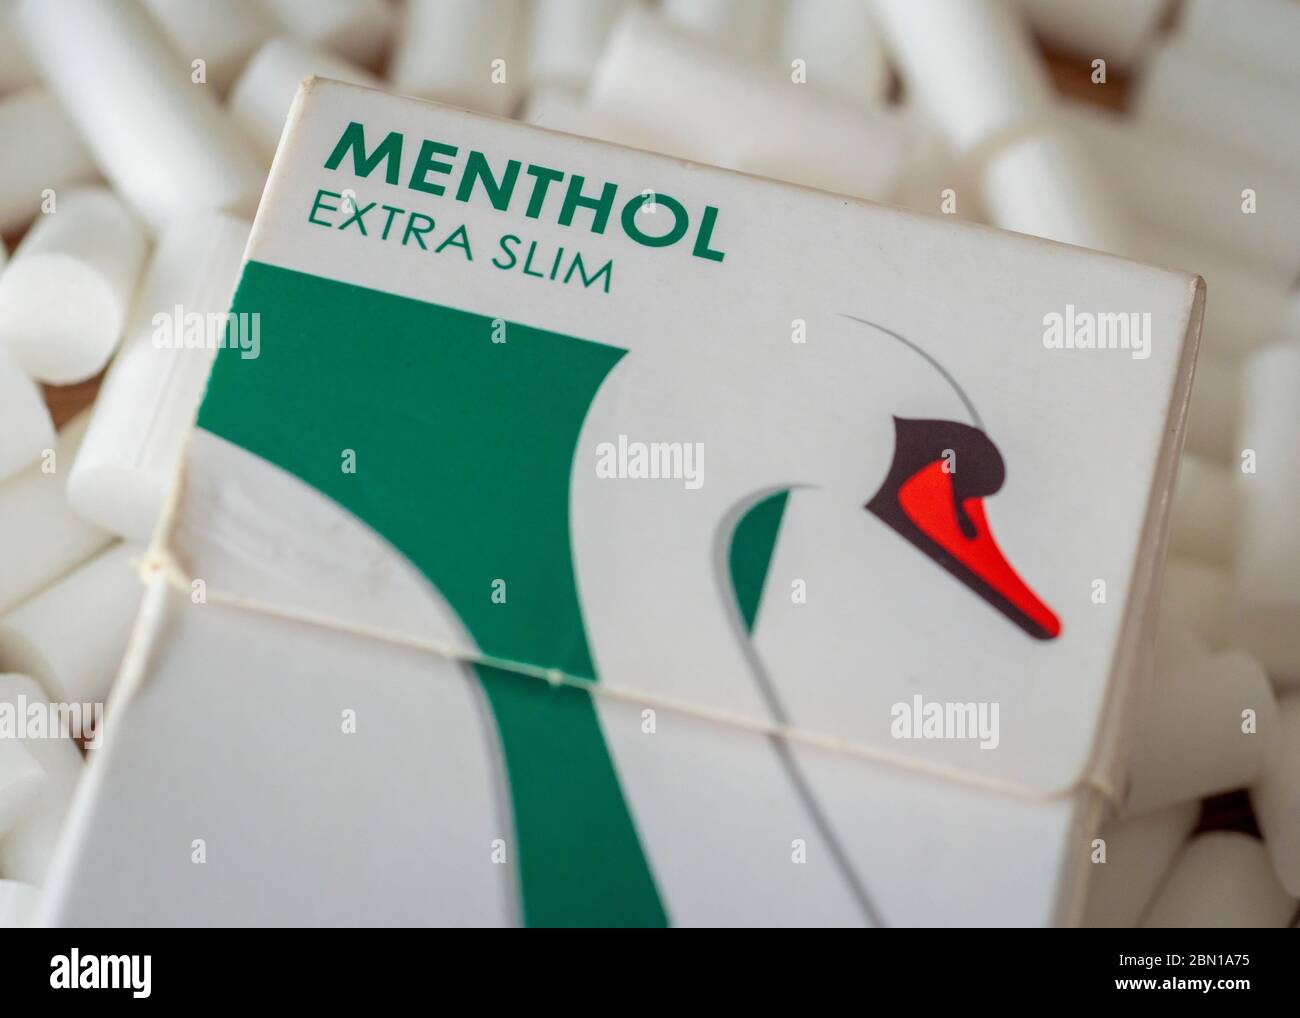 Box of Swan Menthol Filter Tips für handgerollte Zigaretten tritt IM Mai  2020 EIN Verbot von Menthol-Zigaretten in Kraft Stockfotografie - Alamy